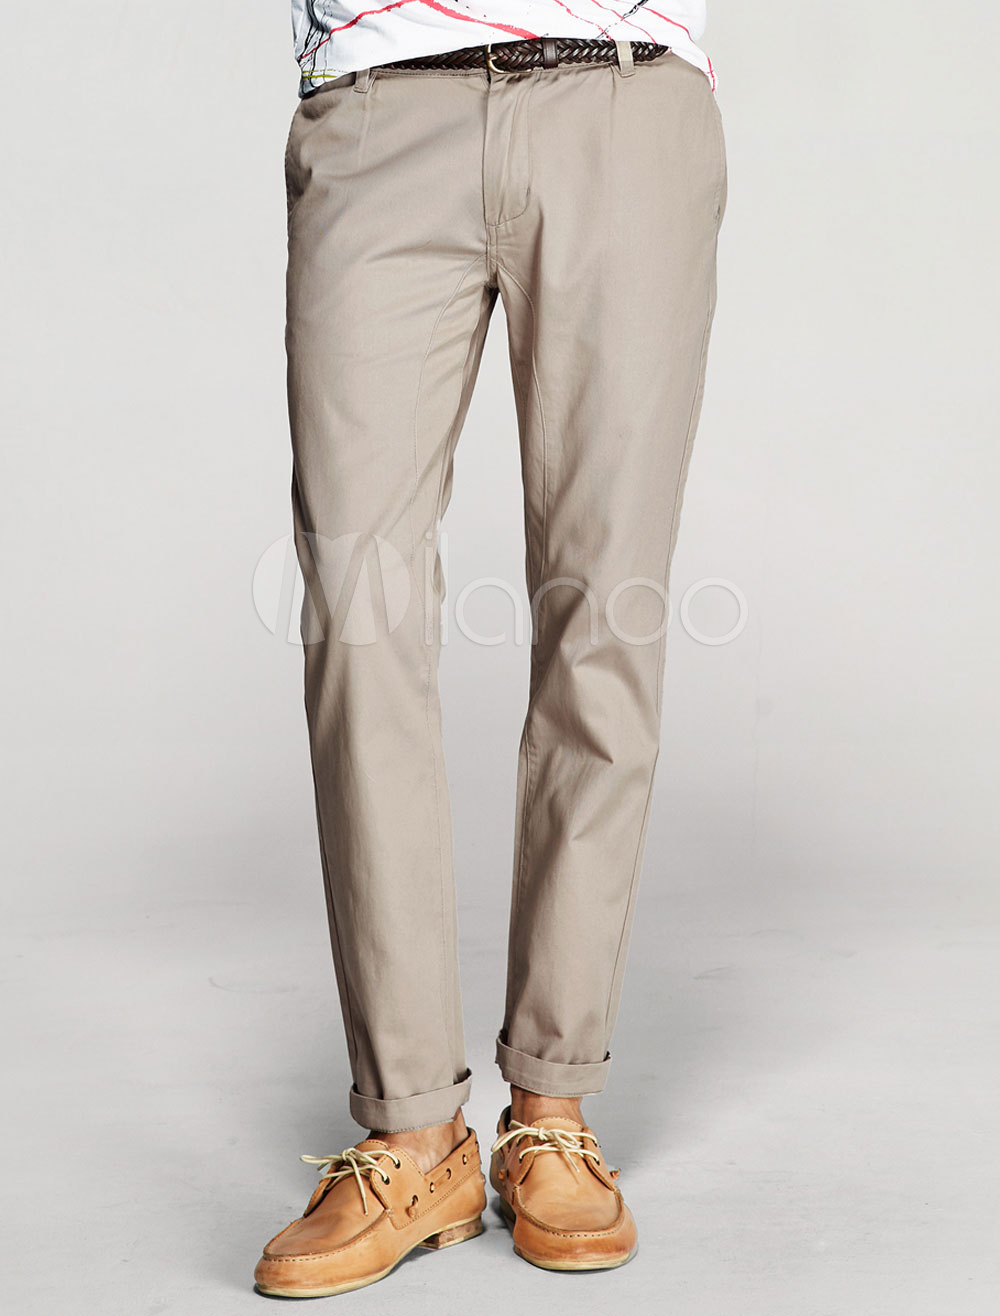 Cotton Khaki Pants Men's Skinny Slim Pants - Milanoo.com